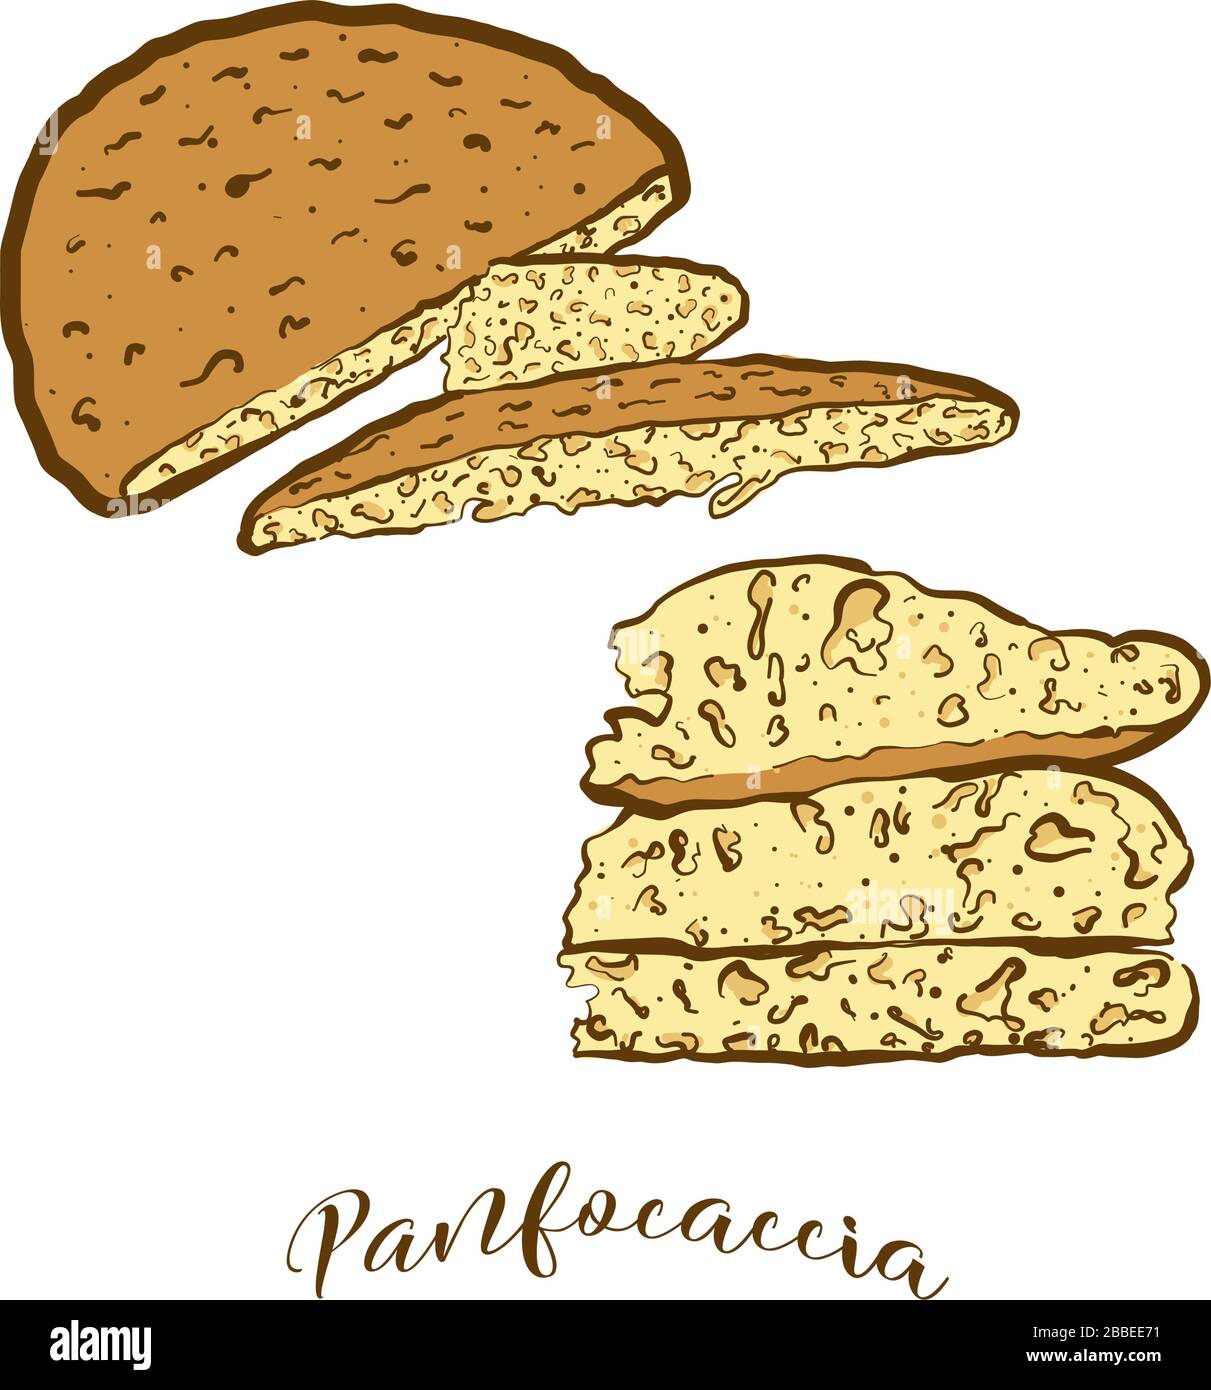 Disegno colorato del pane Panfocaccia. Rappresentazione vettoriale di alimenti lievitati, di solito noti in Italia. Schizzi di pane colorati. Illustrazione Vettoriale